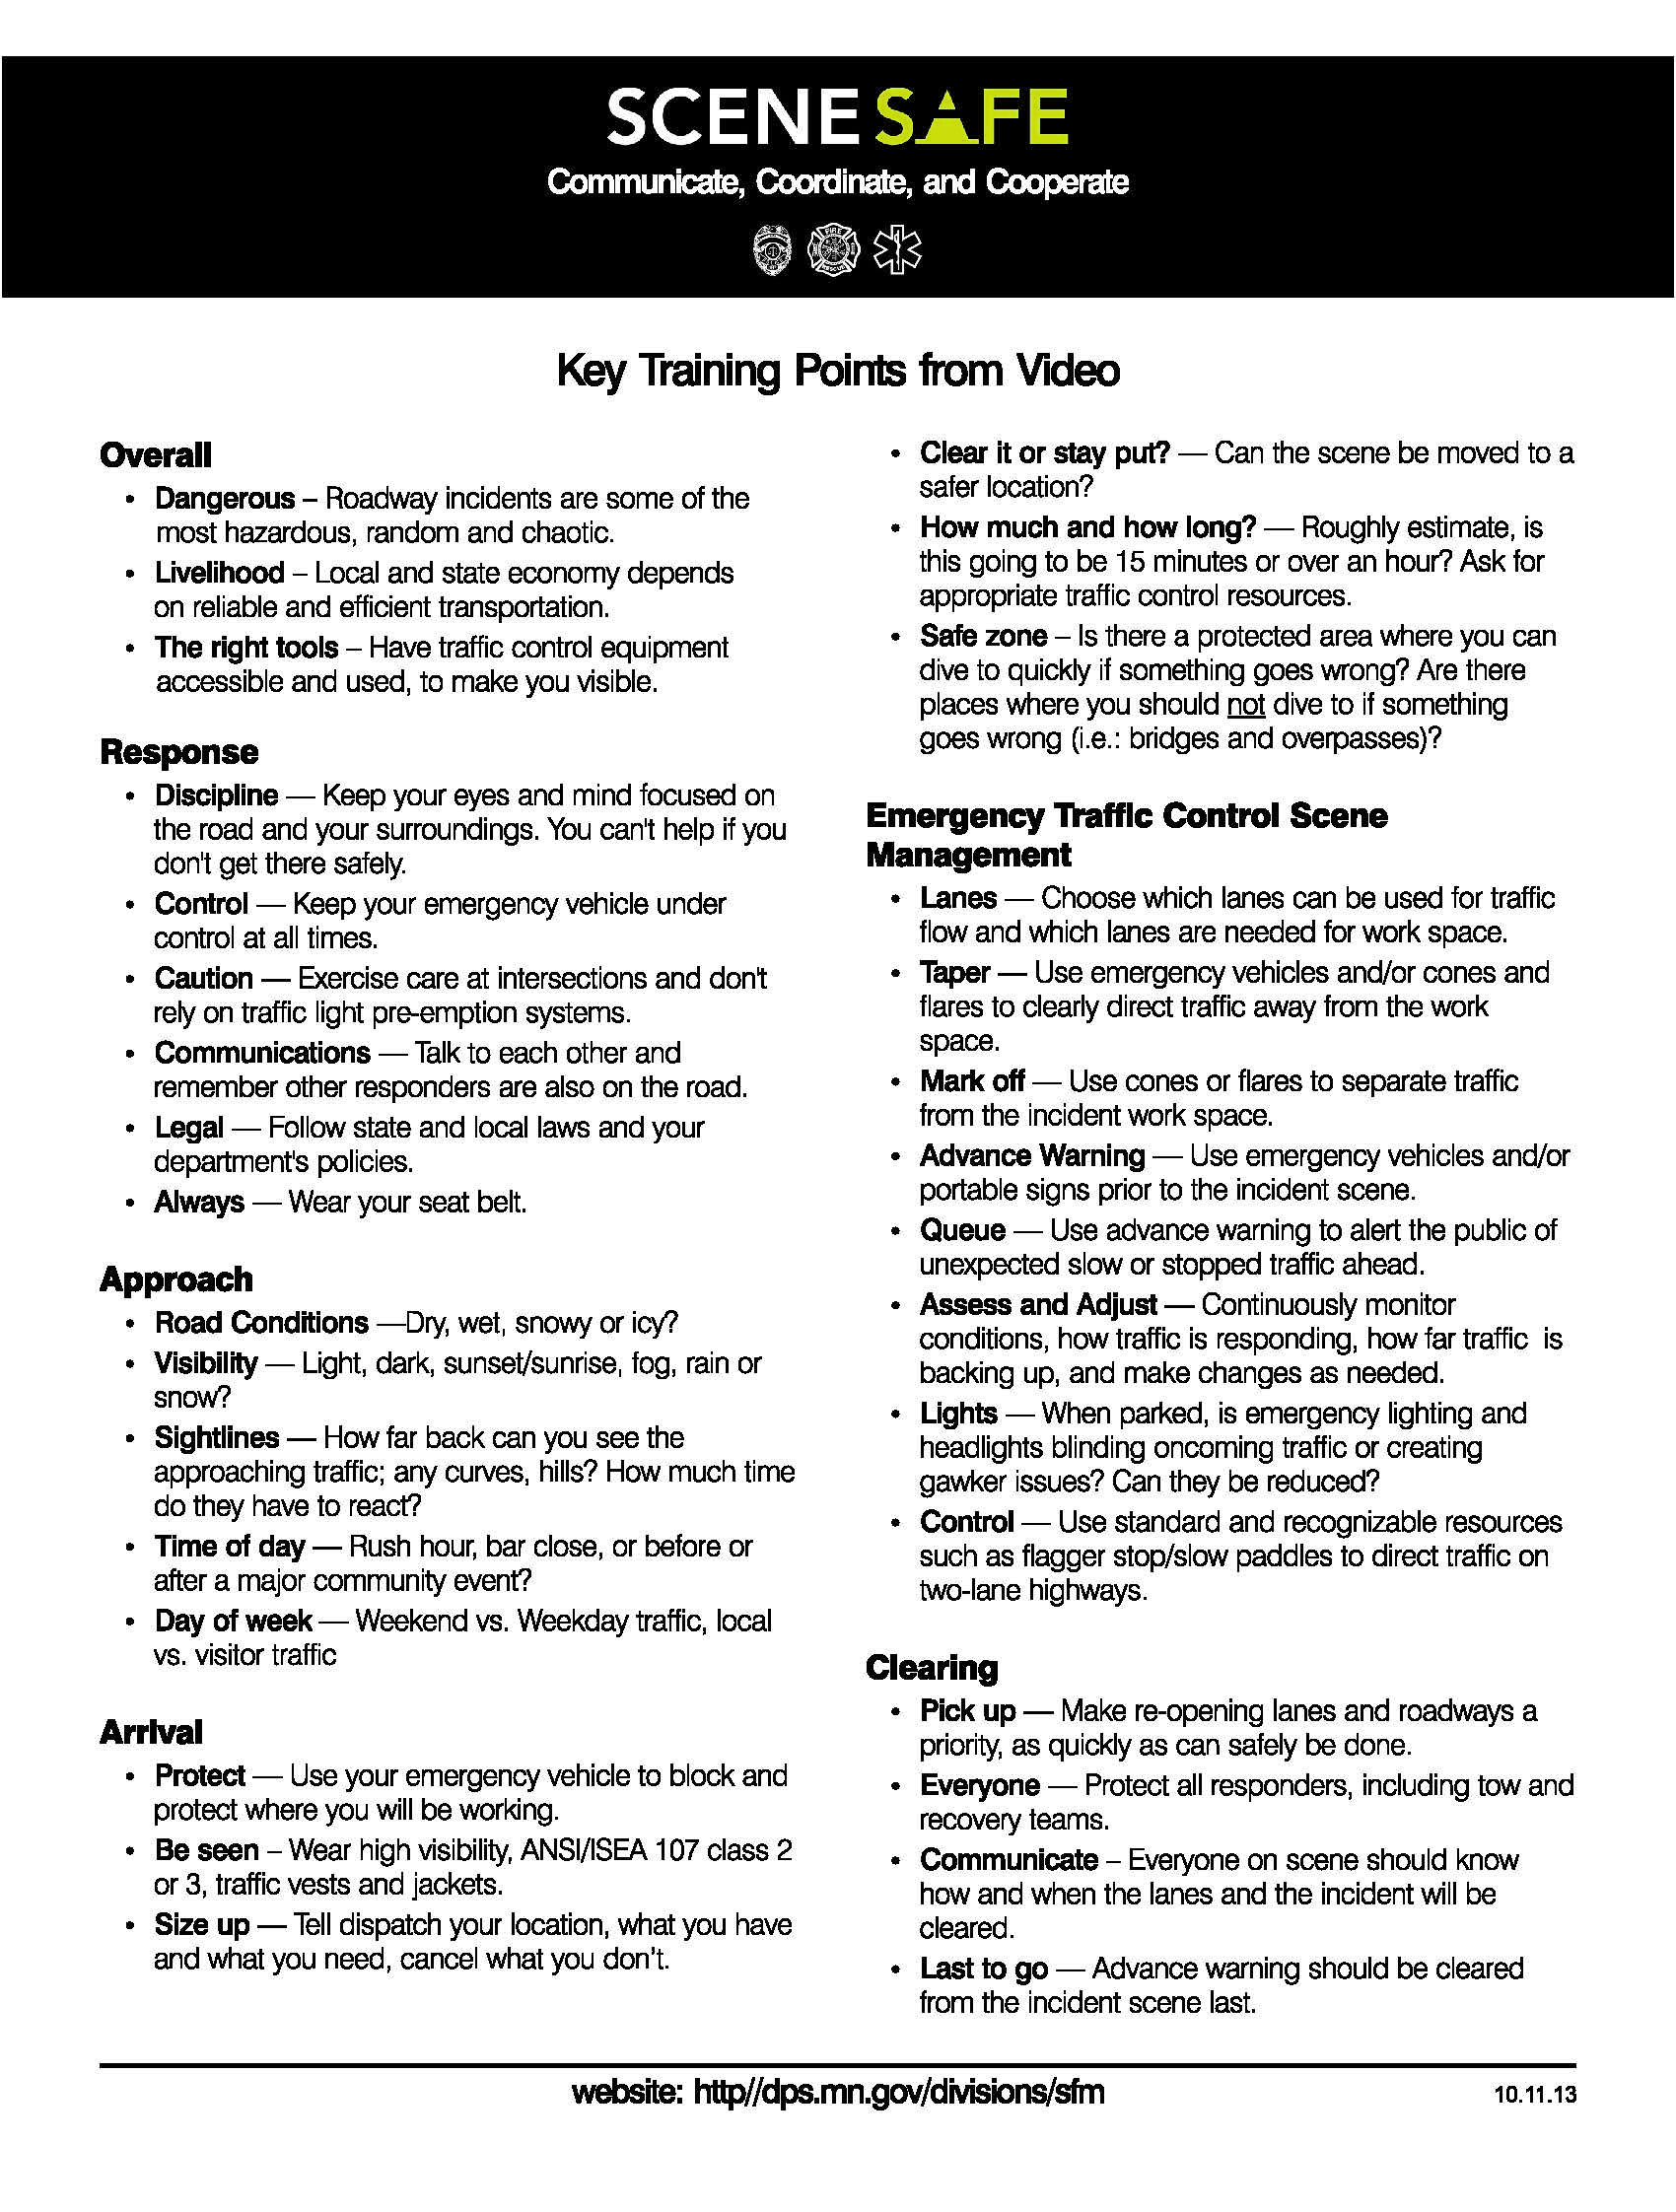 SceneSafe Key Training Points.jpg